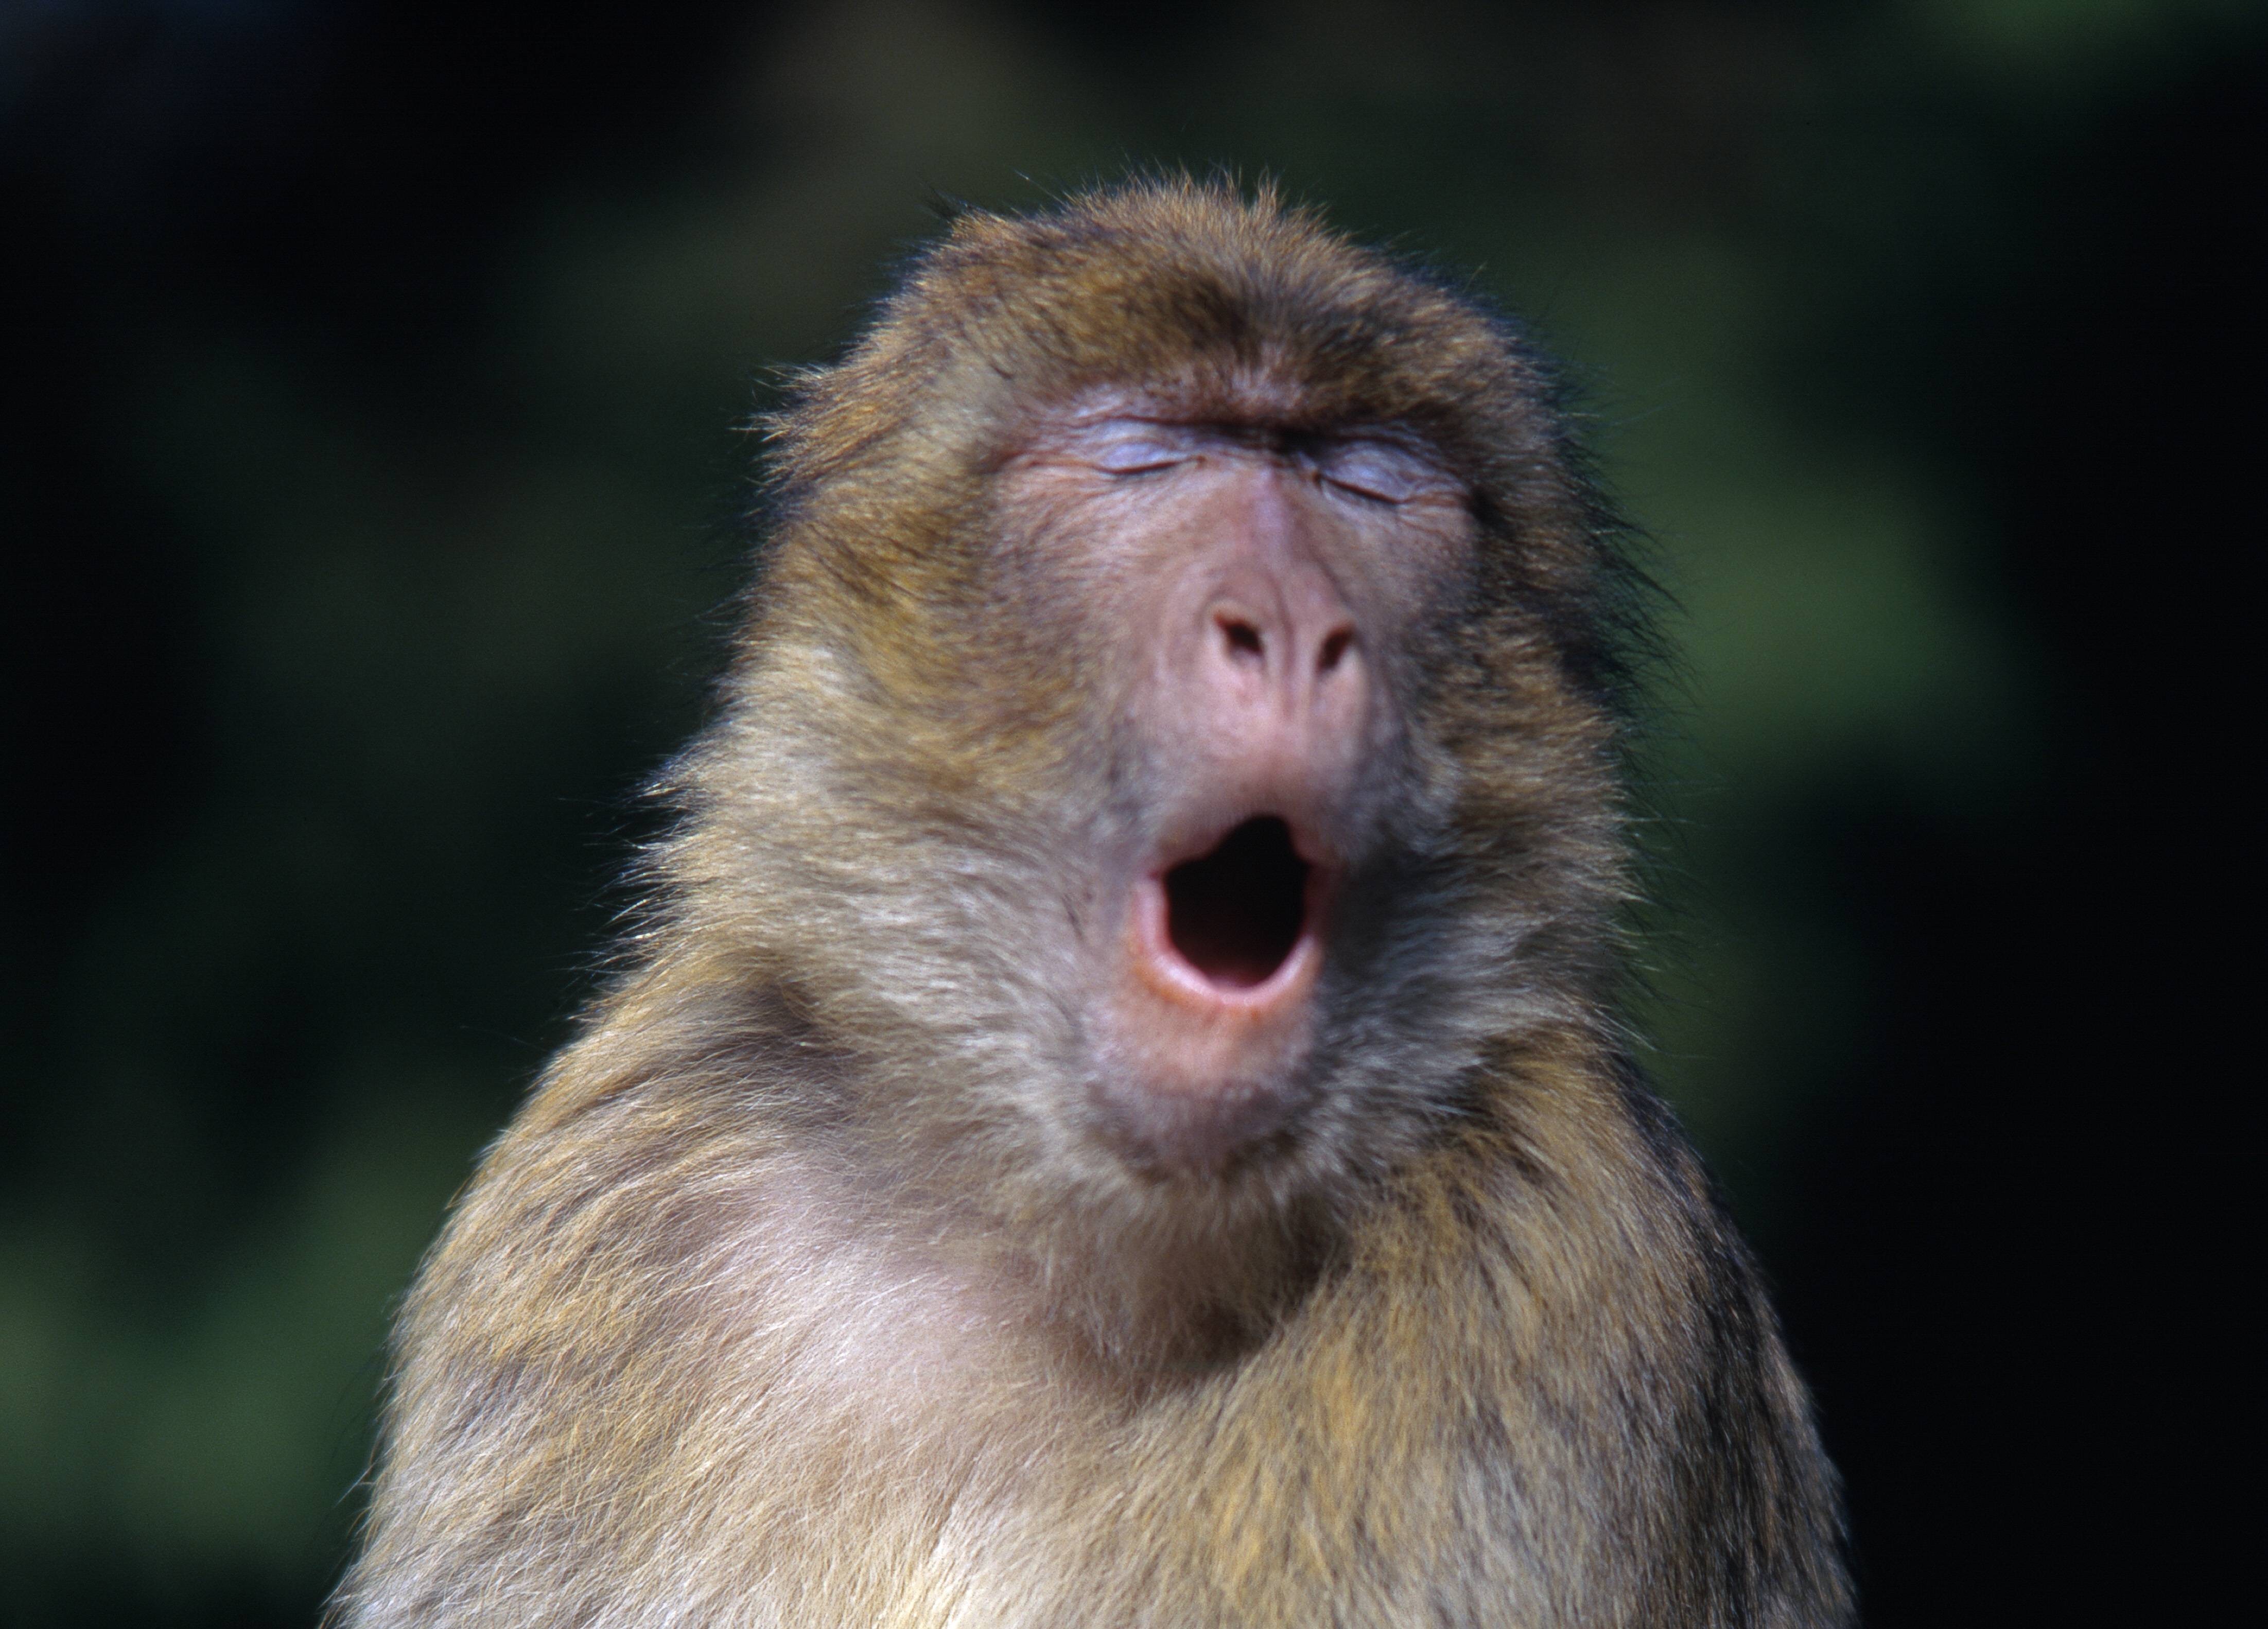 Des chercheurs de la VUB affirment que les singes ont la capacité physique de parler 